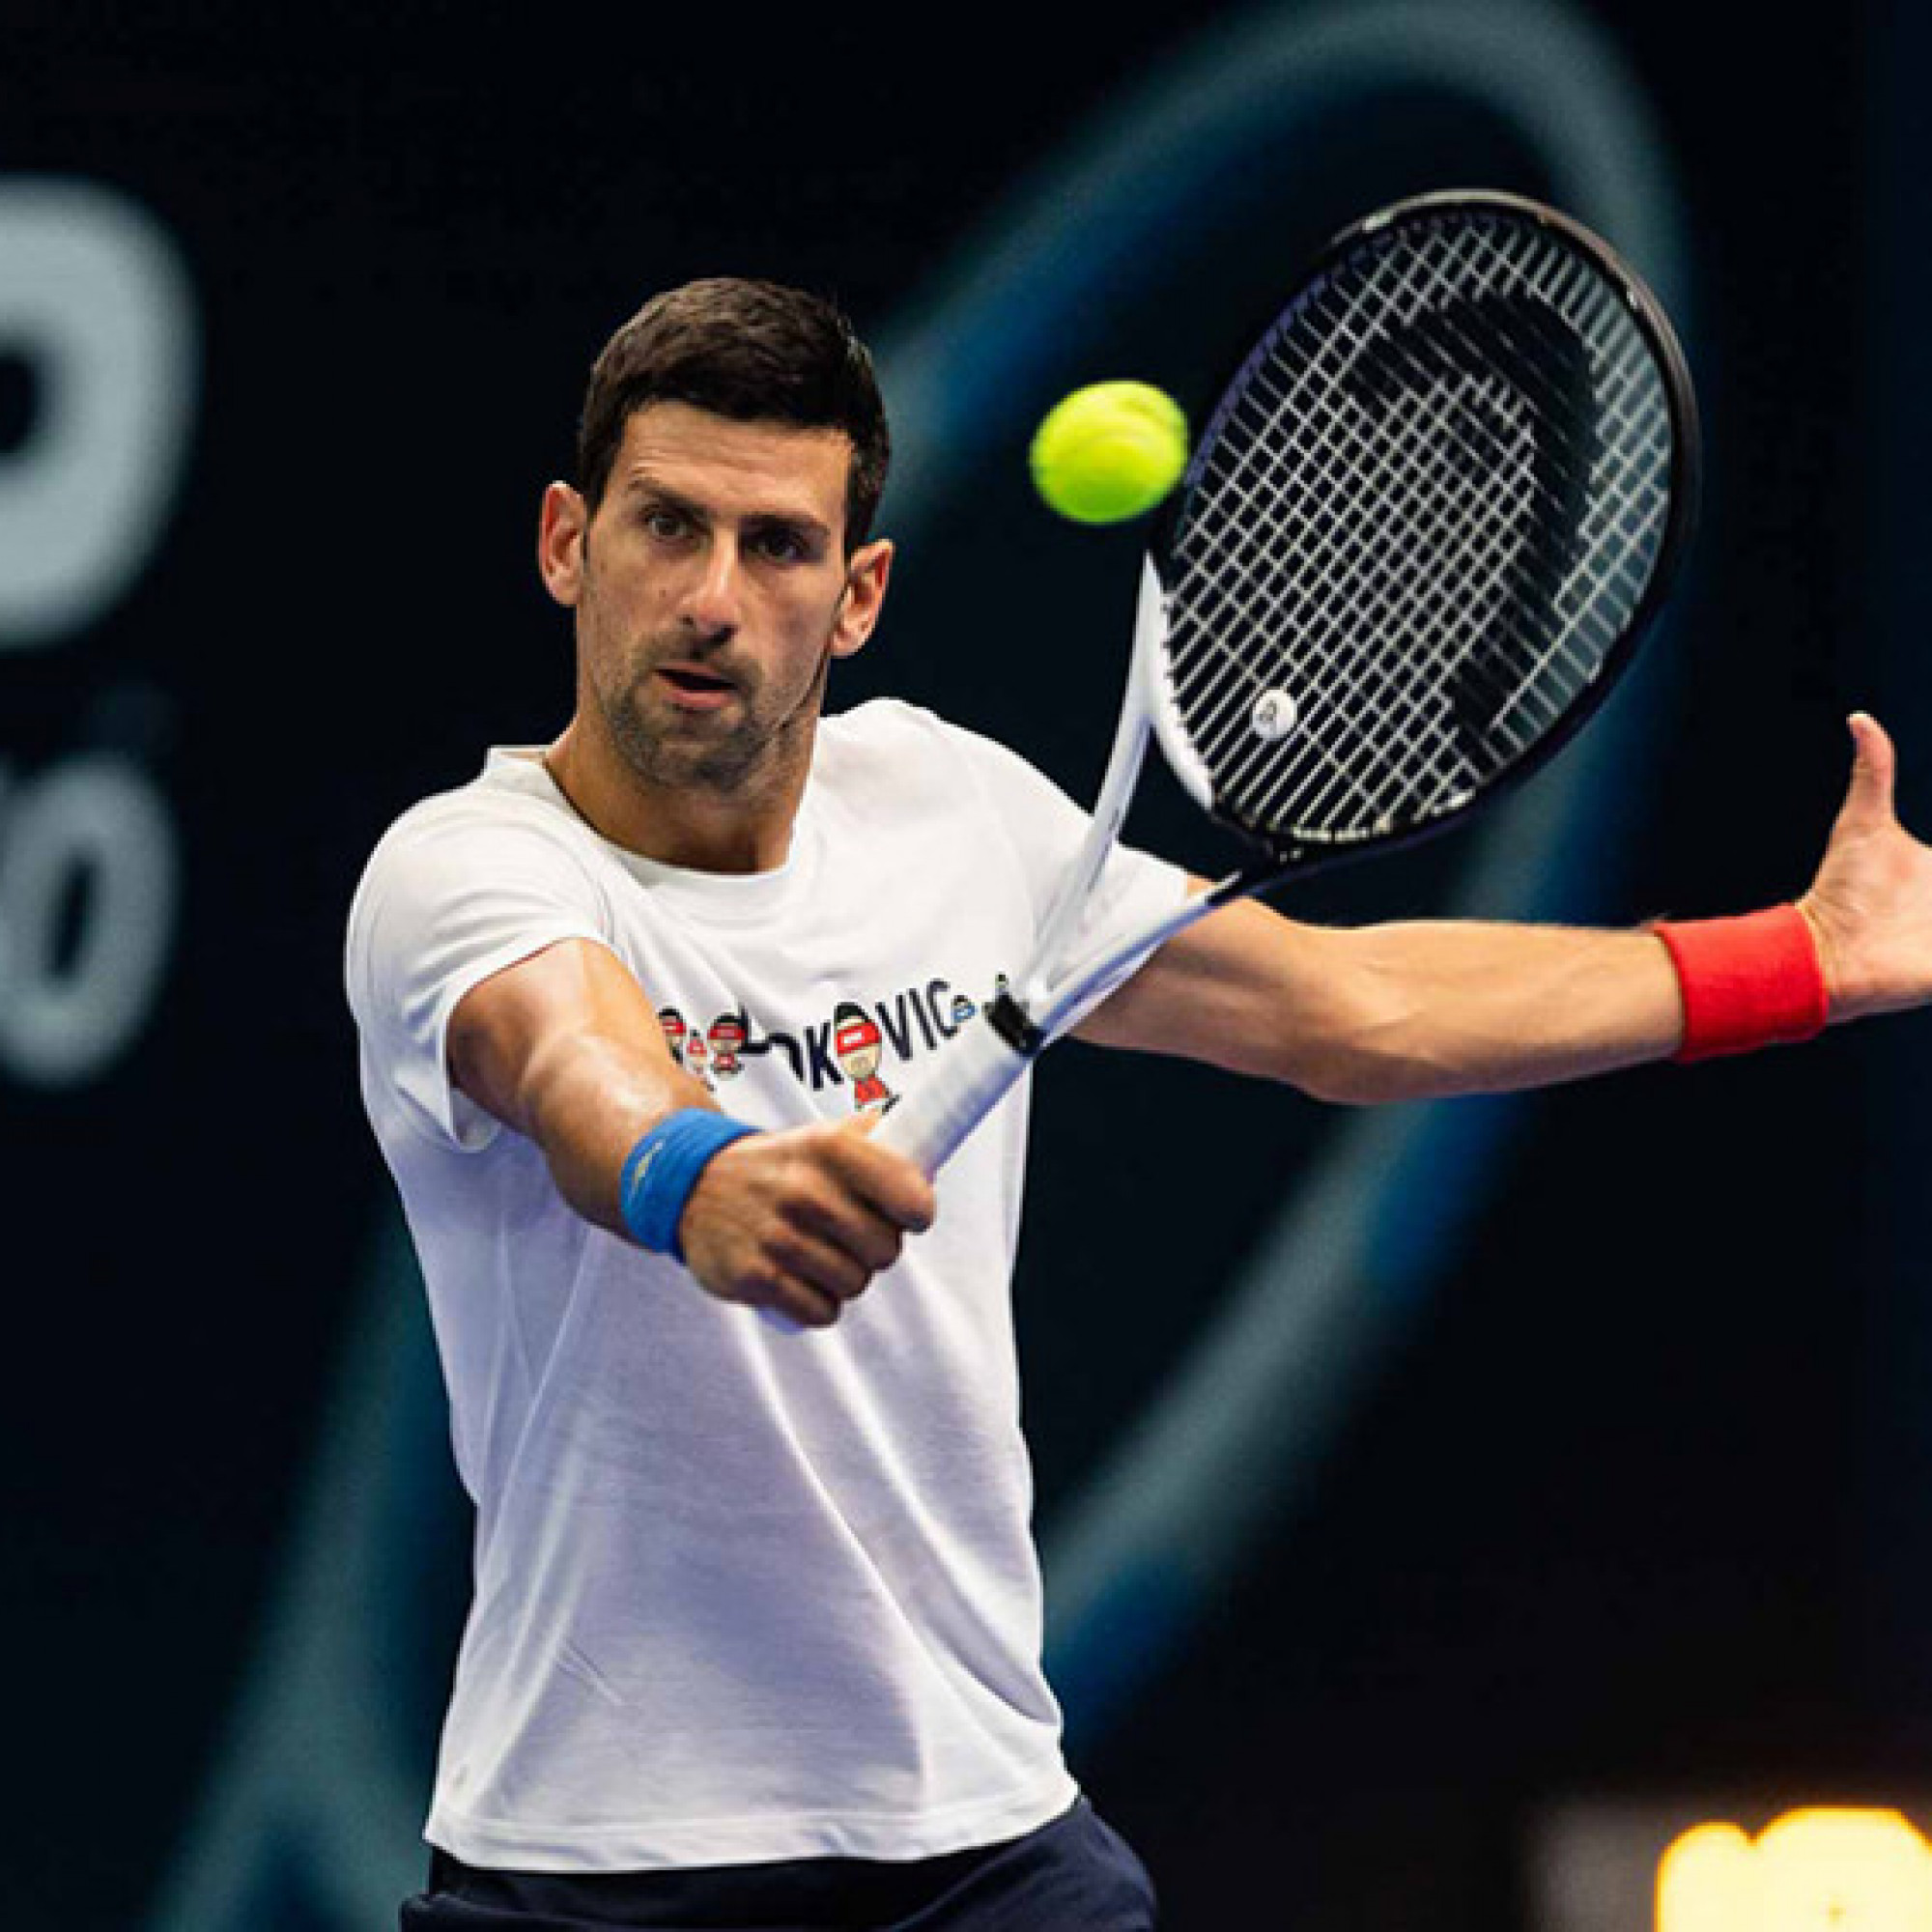  - Nóng rực tennis ATP 250: Djokovic bị loại vì đồng đội bỏ cuộc, Thiem thua ngược